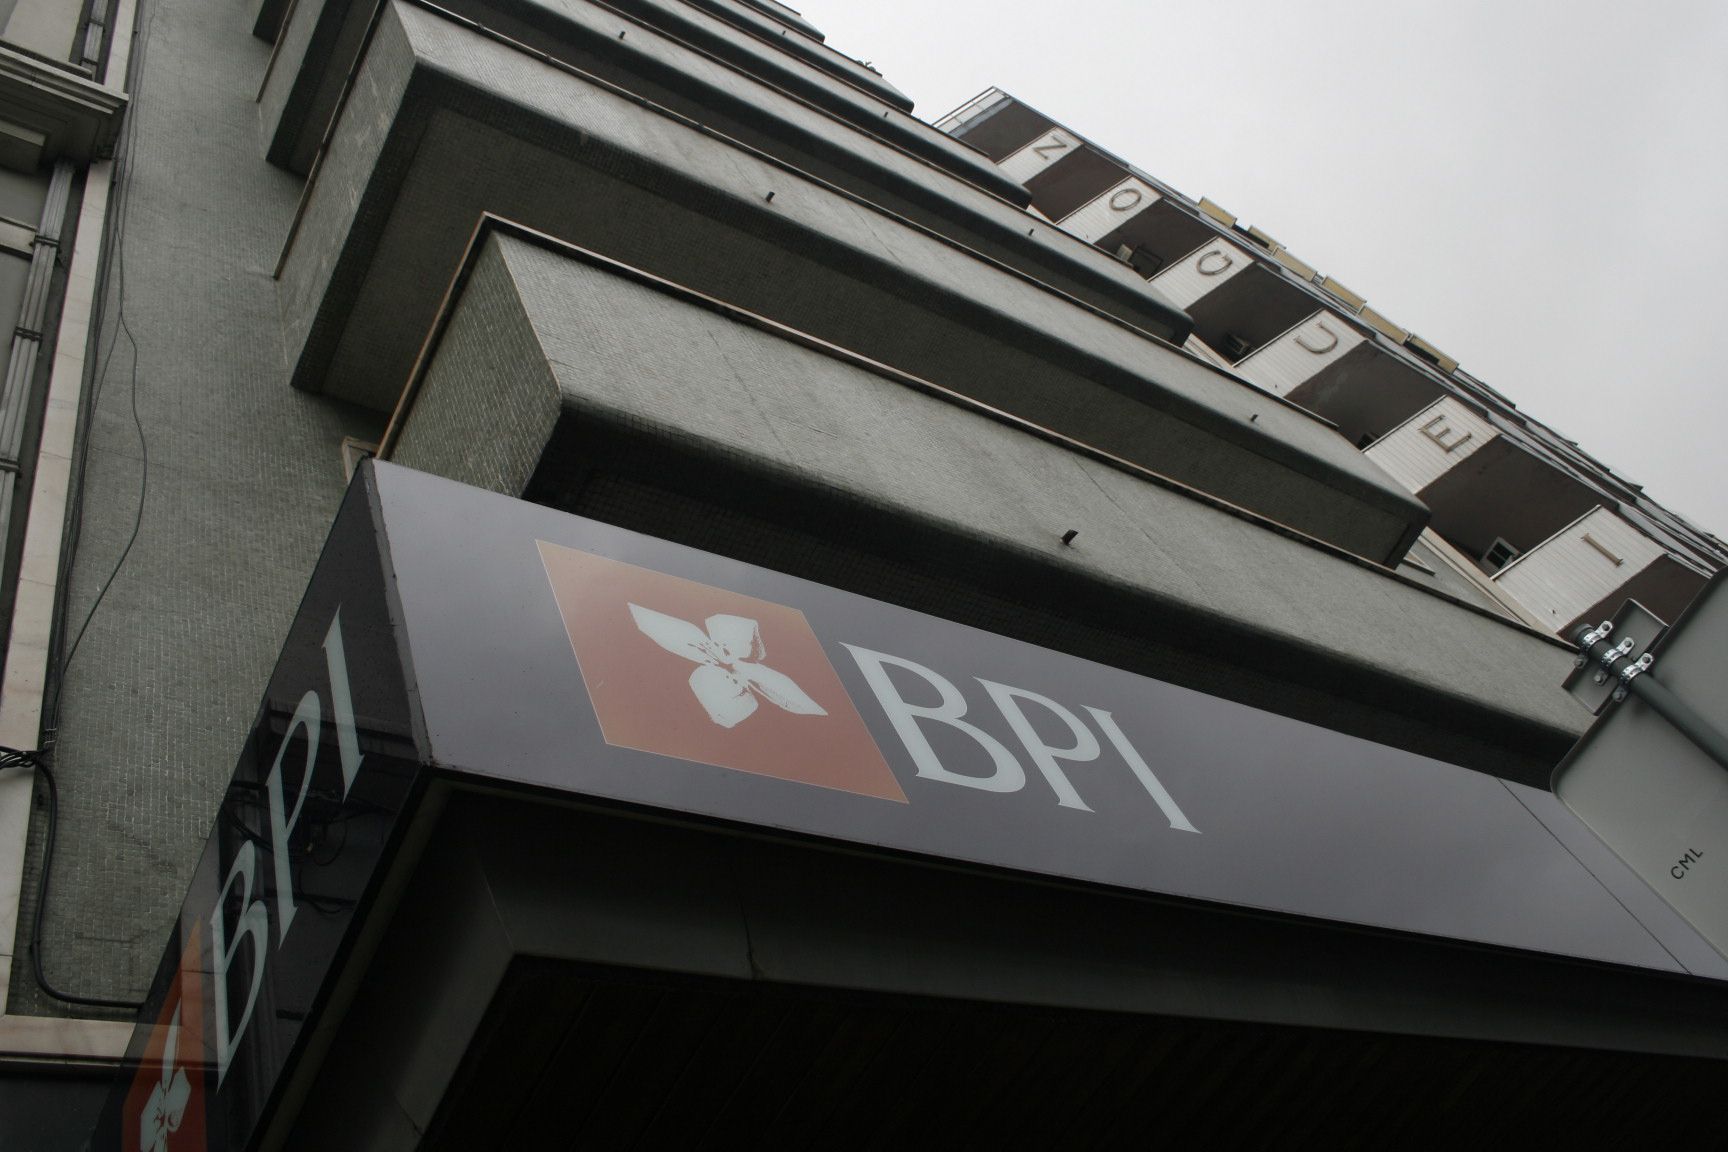 BPI. Lucro sobe 35% para 390 milhões de euros até setembro